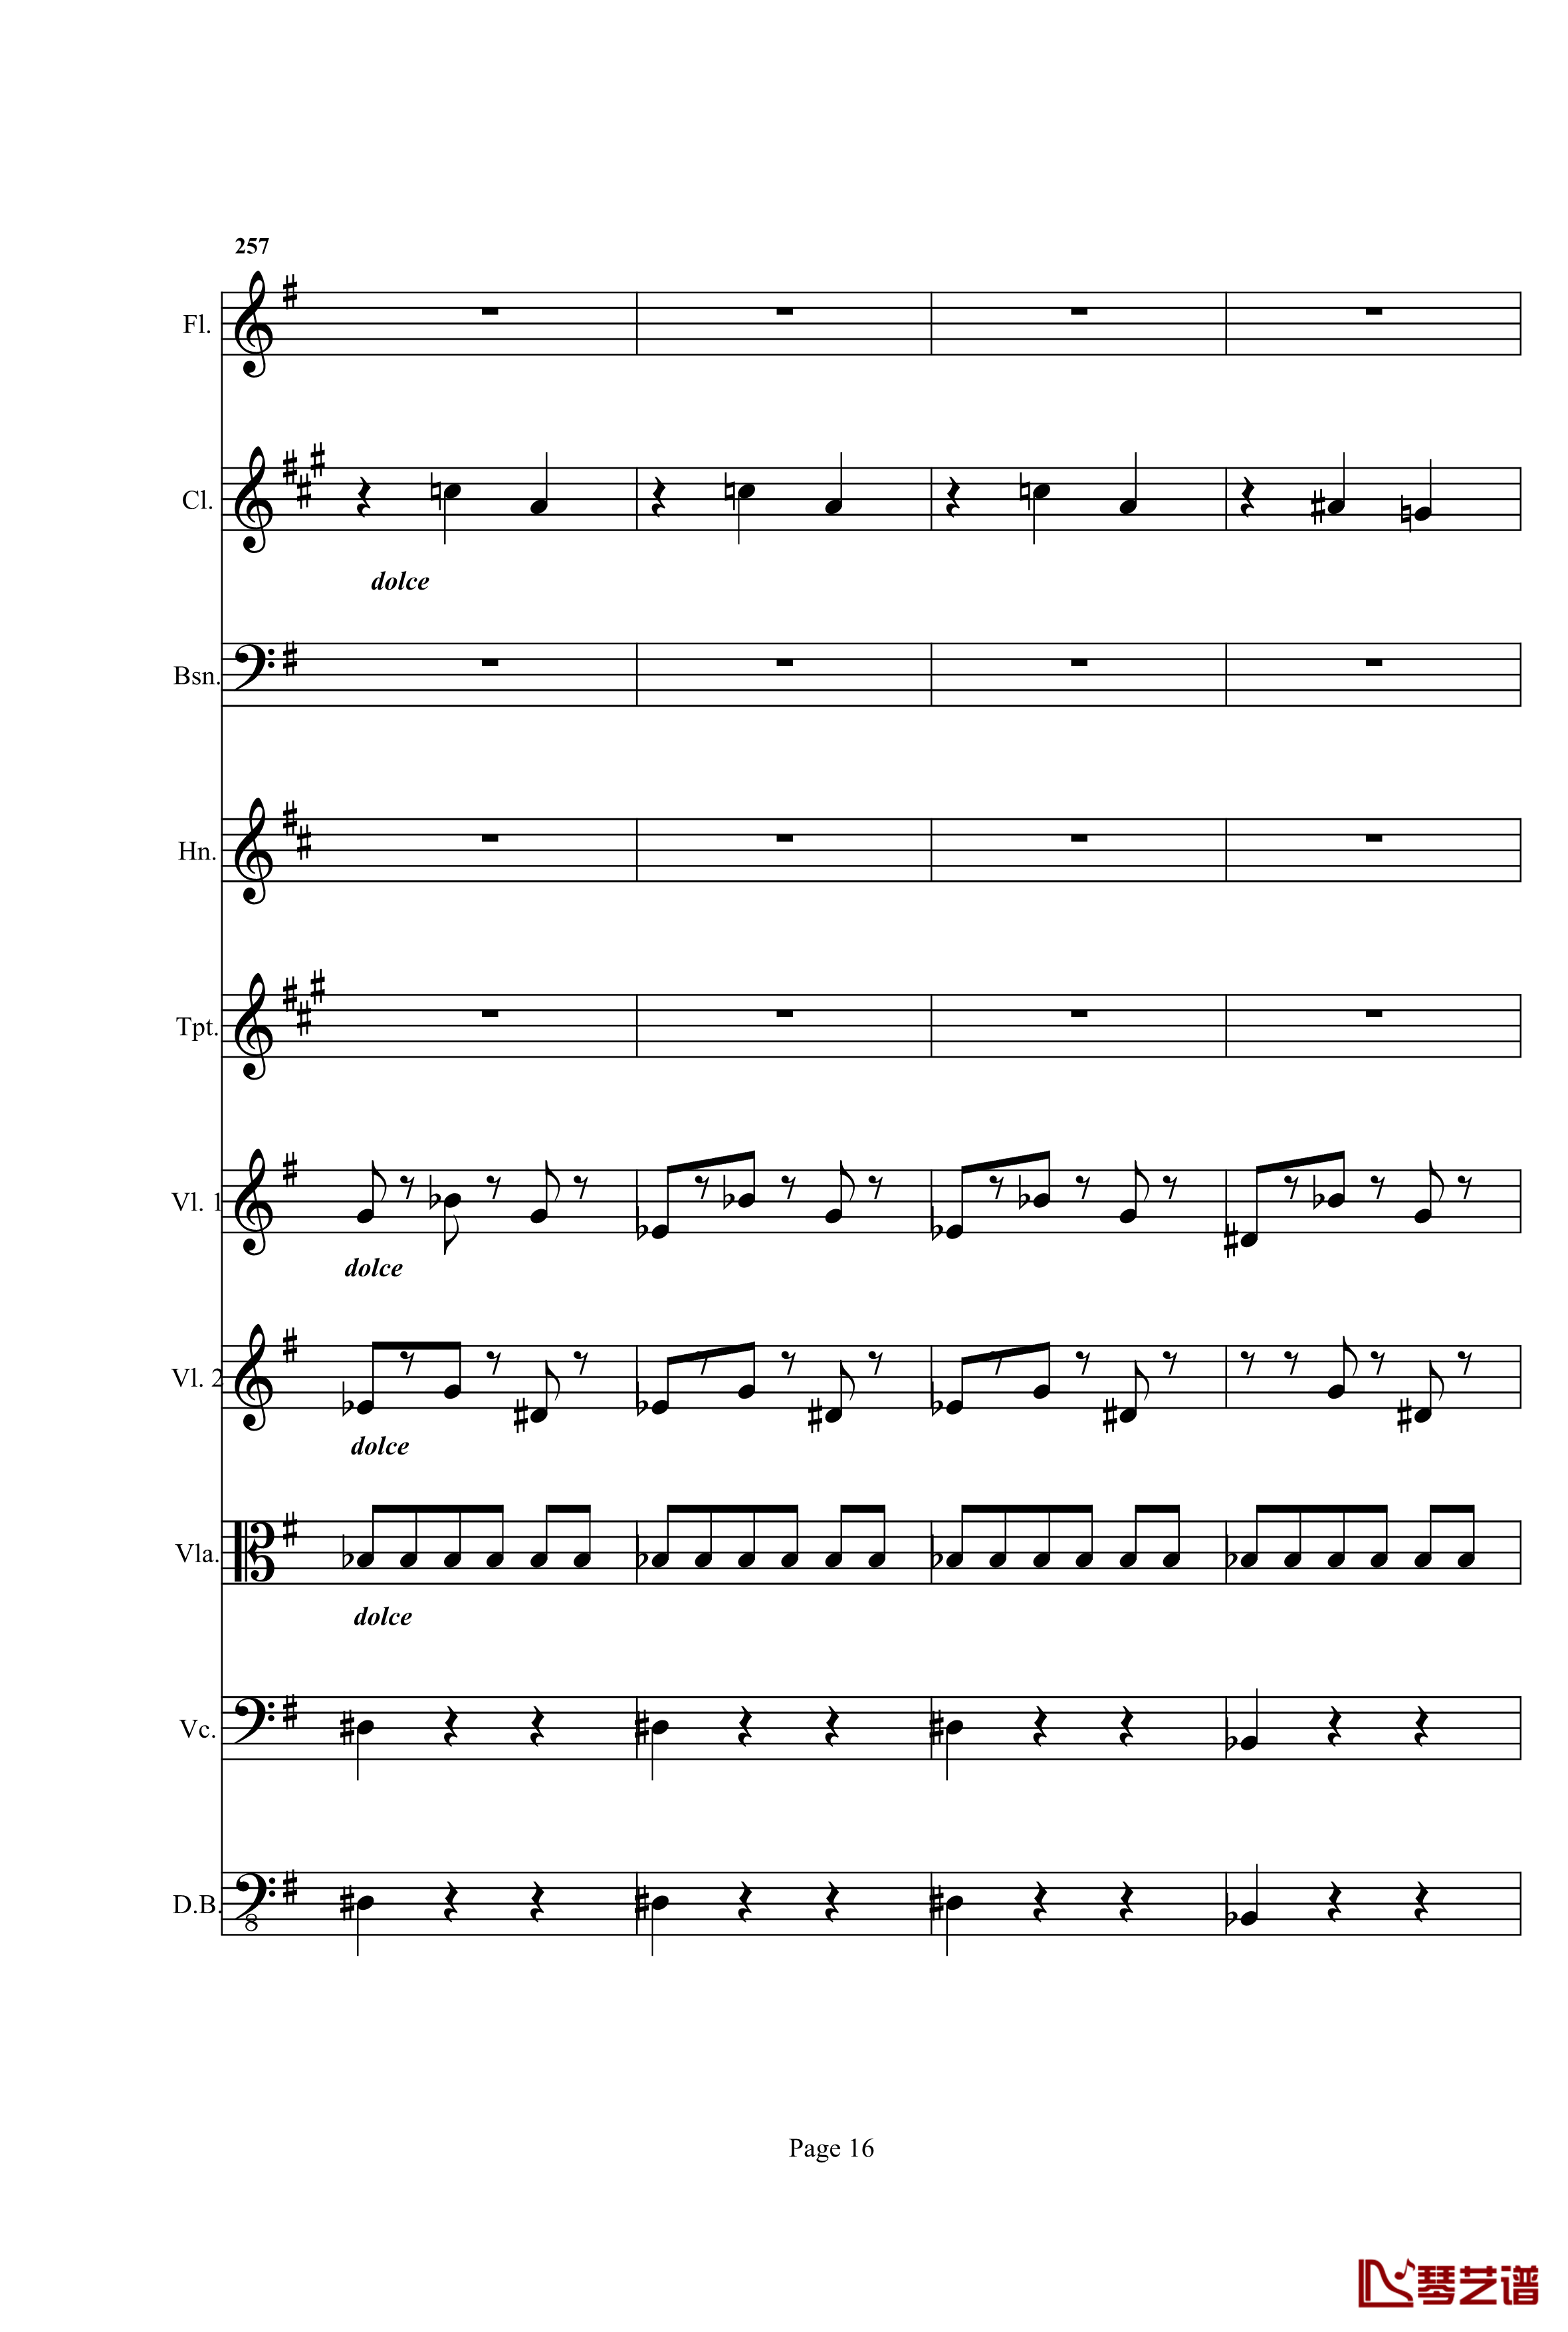 奏鸣曲之交响钢琴谱-第25首-Ⅰ-贝多芬-beethoven16